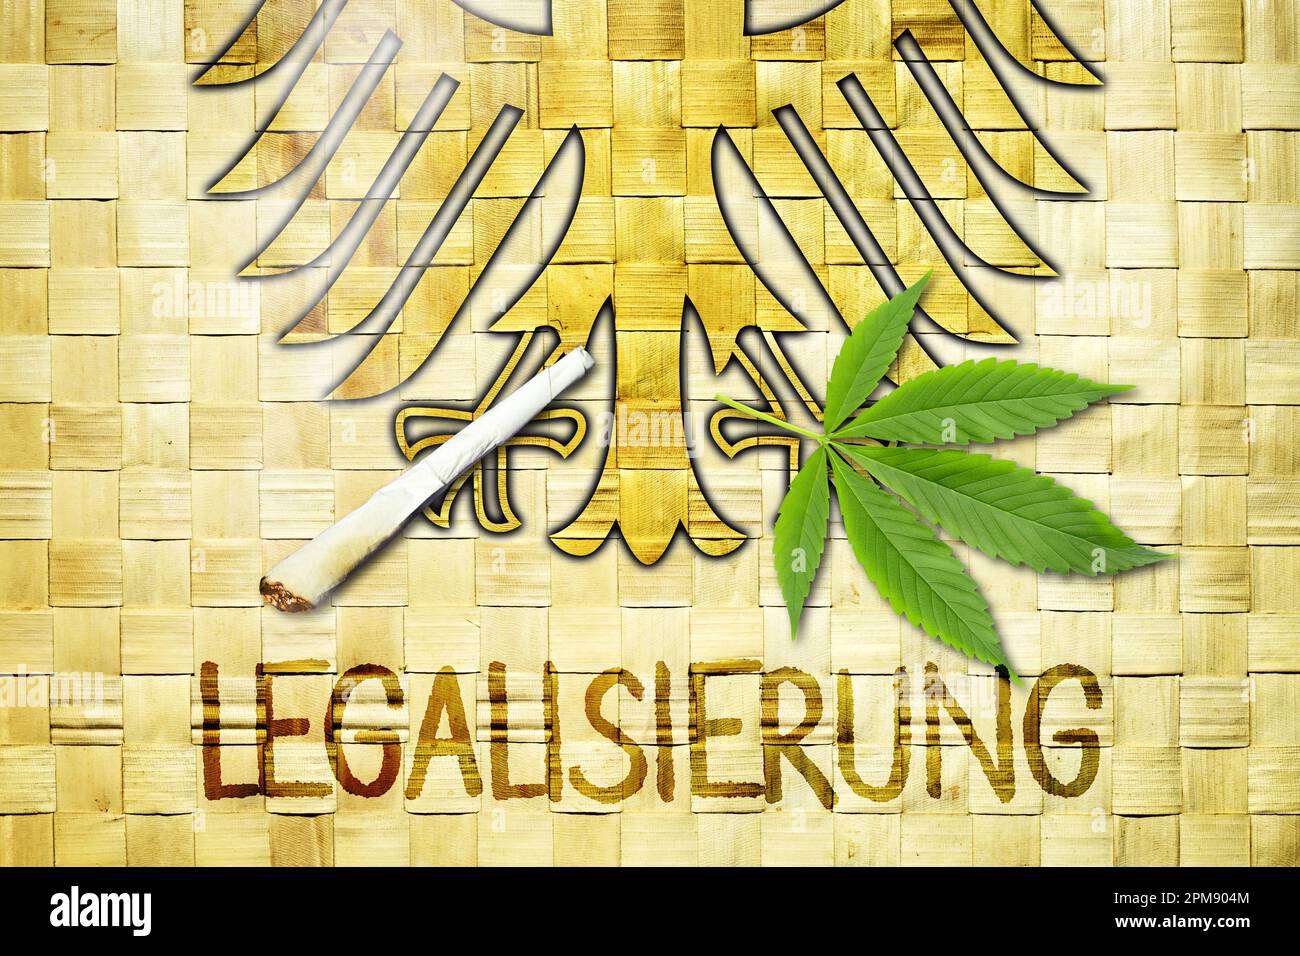 FOTOMONTAGE, Deutscher Bundesadler mit Joint, Cannabisblatt und Schriftzug Legalisierung, Symbolfoton Cannabis-Legalisierung Foto Stock